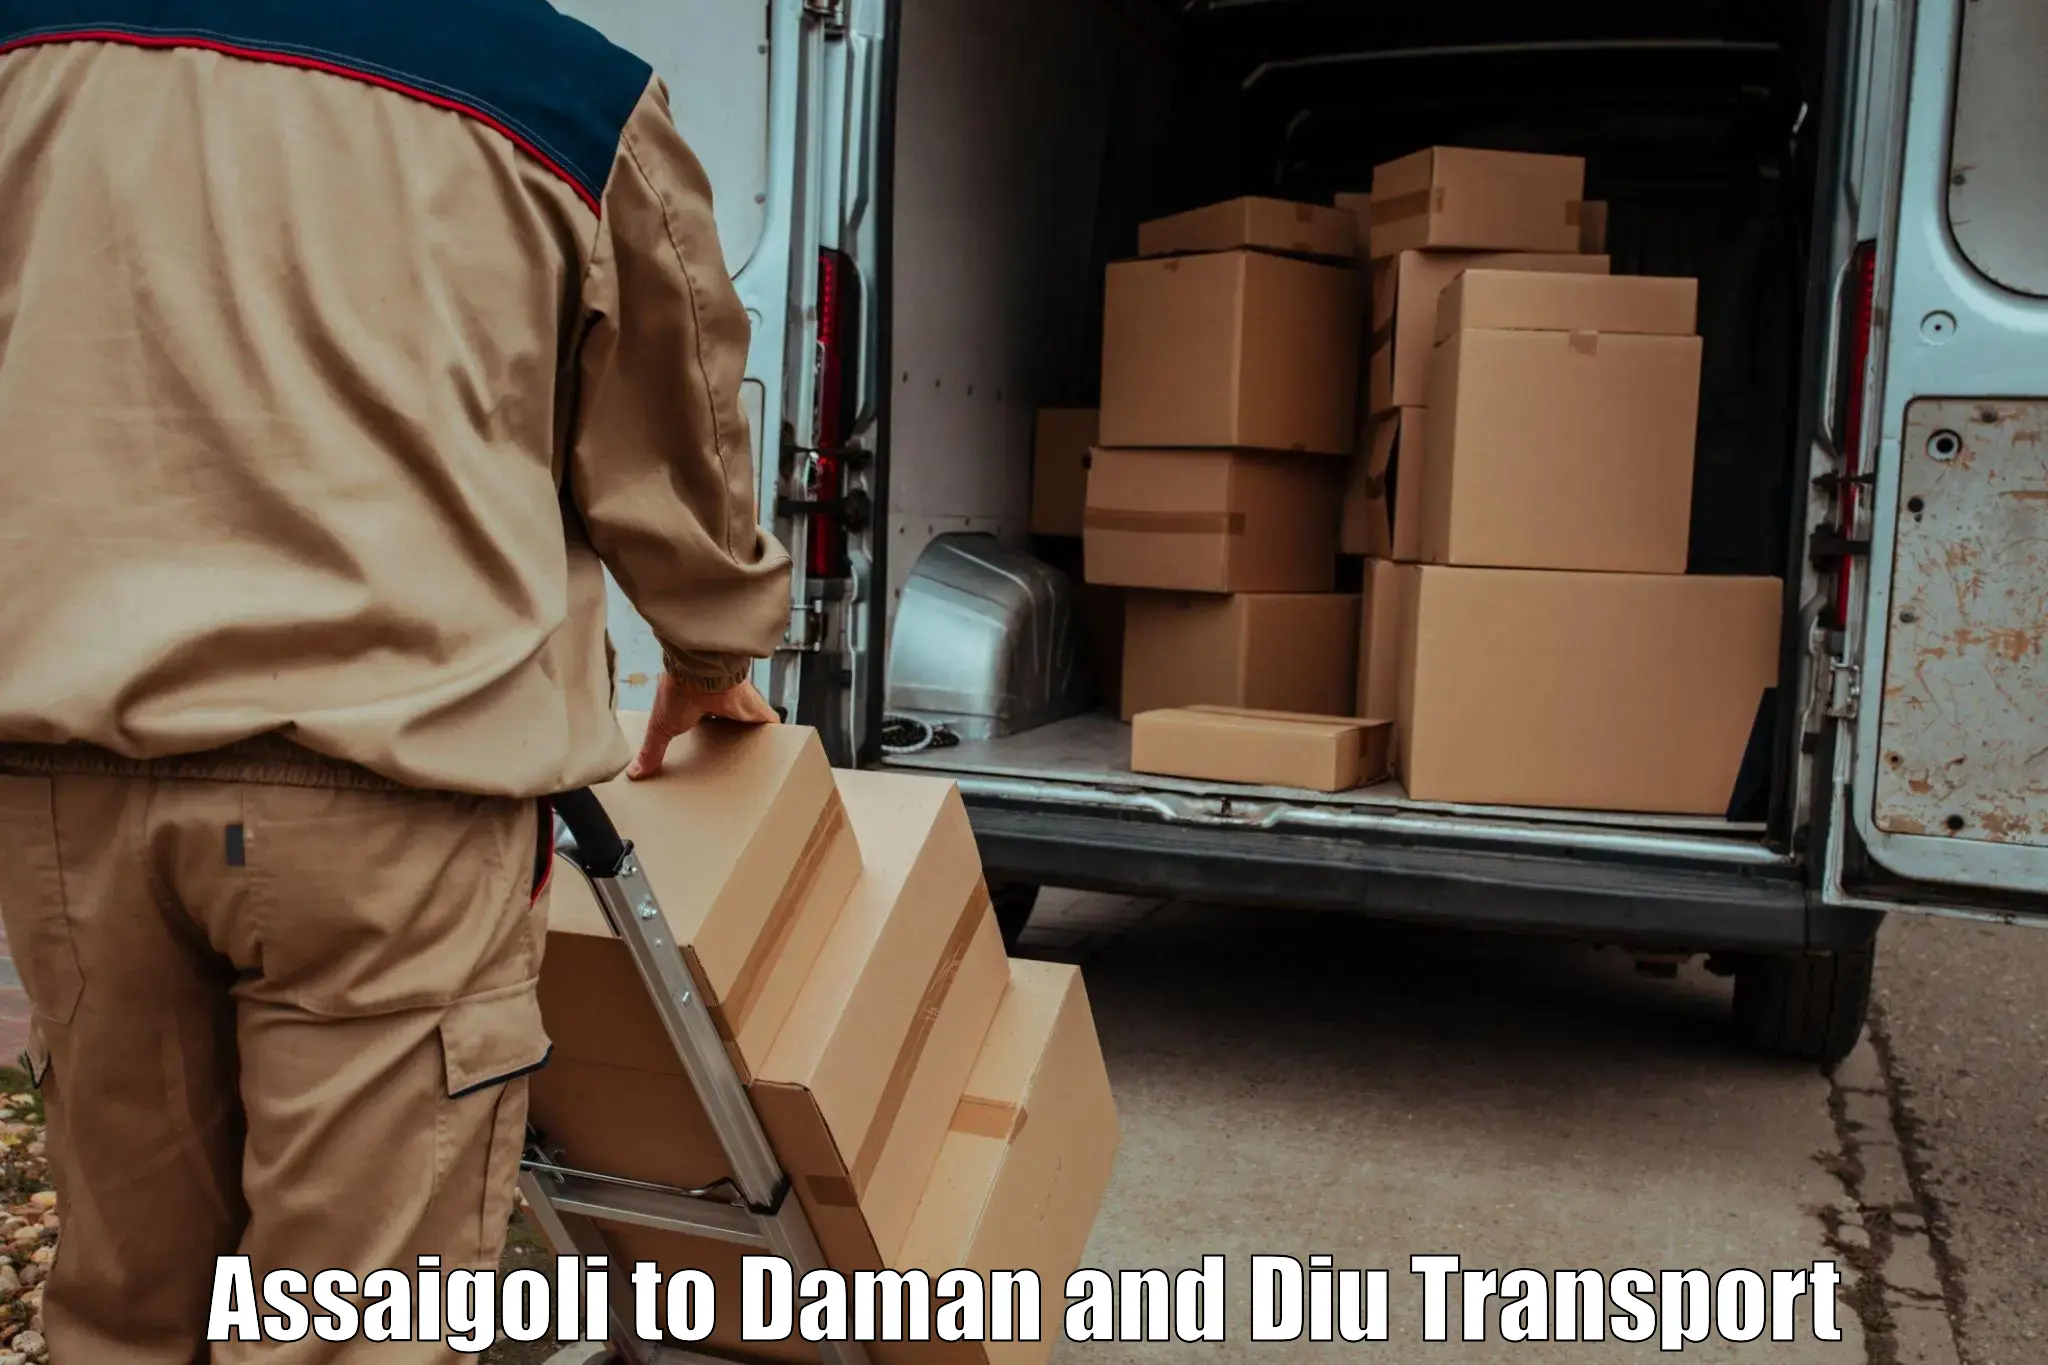 India truck logistics services Assaigoli to Daman and Diu